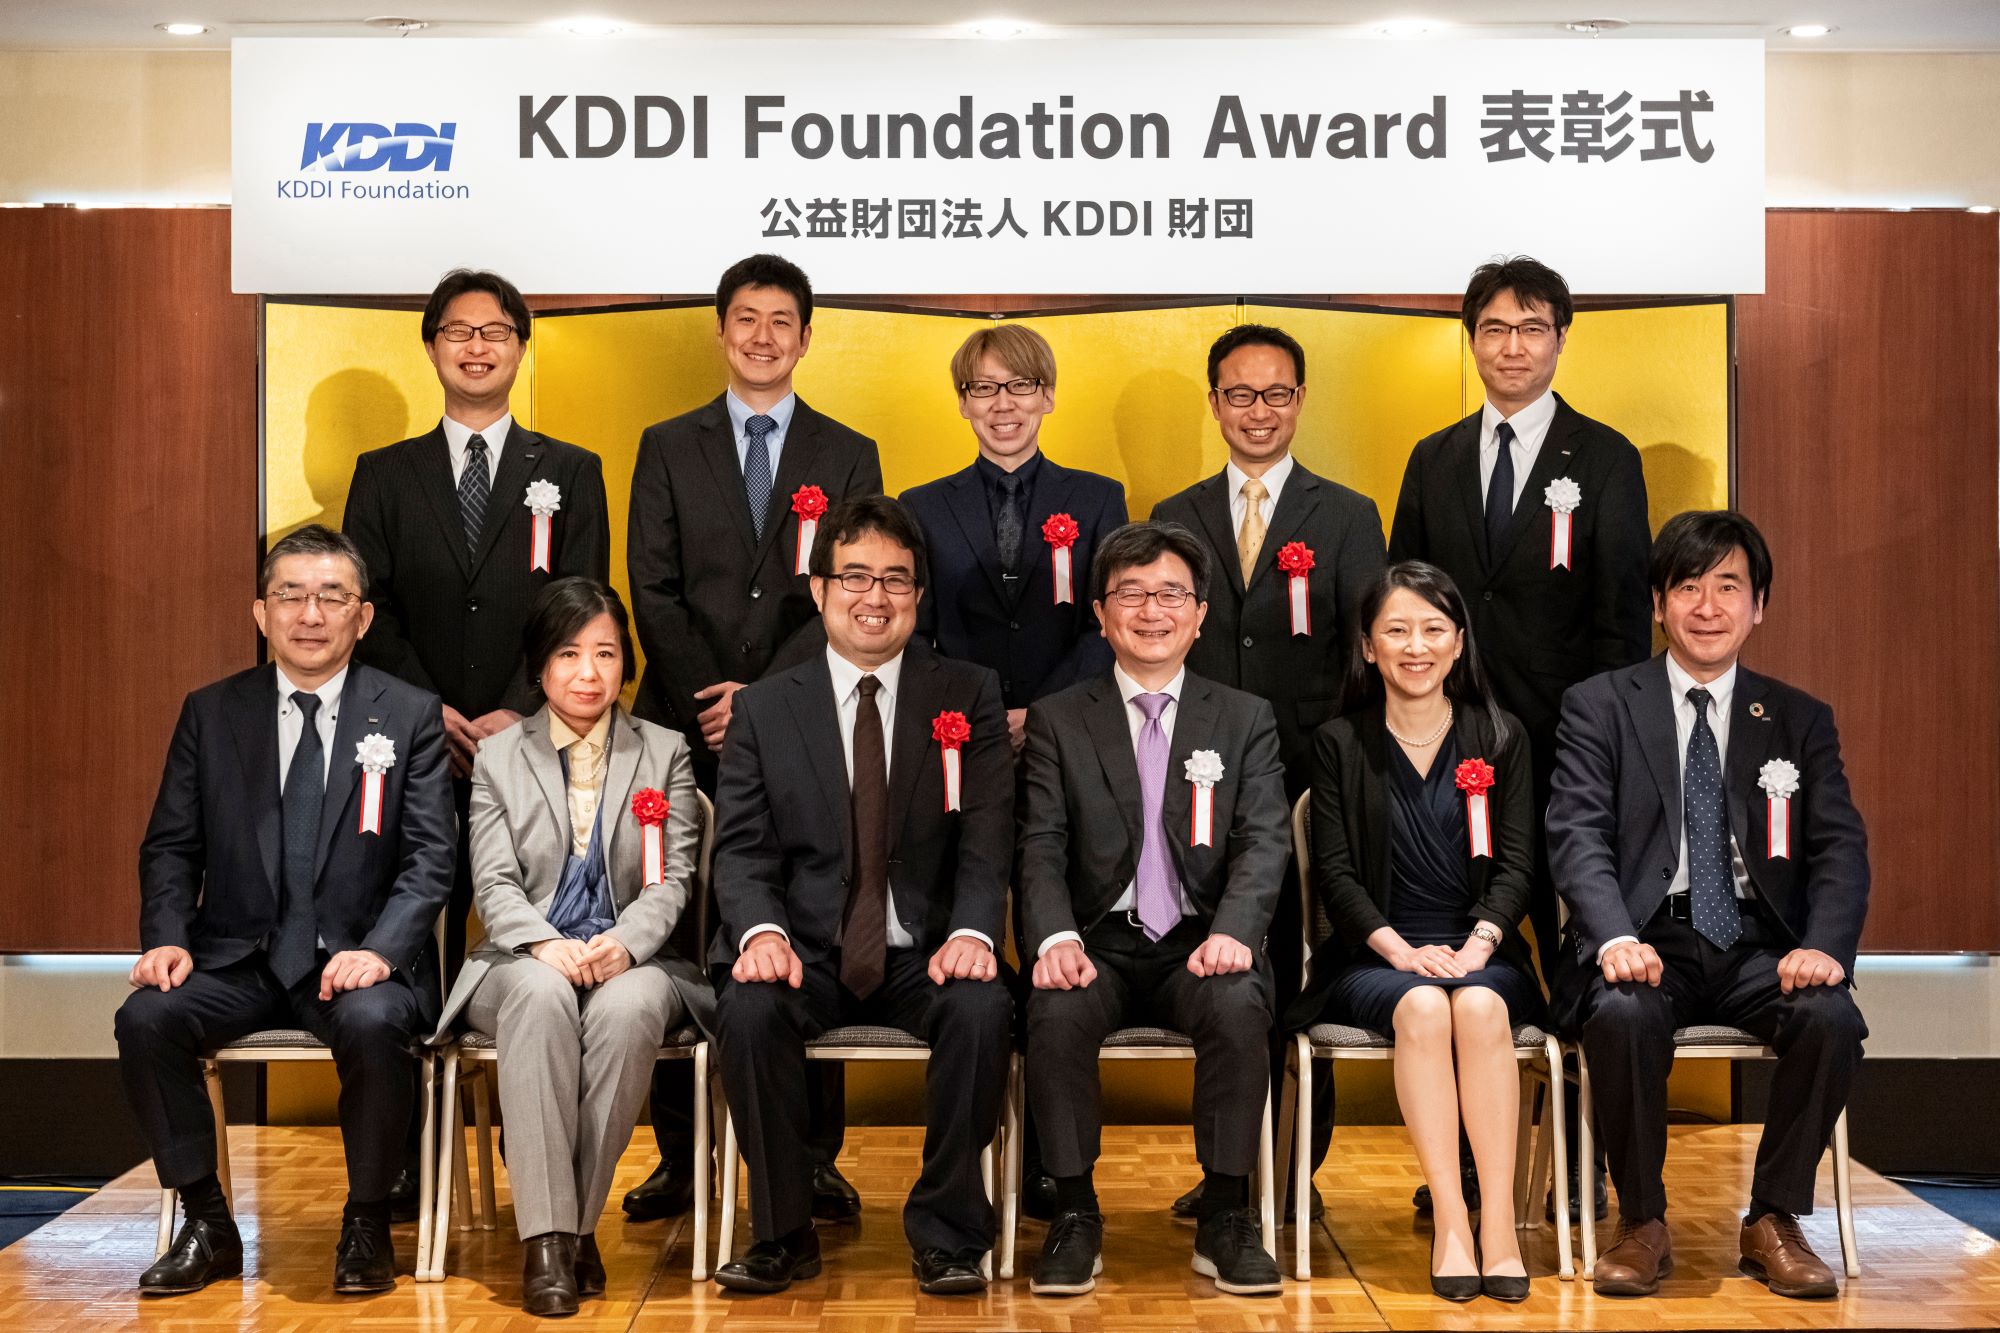 「KDDI Foundation Award表彰式」と「助成金贈呈式」を開催